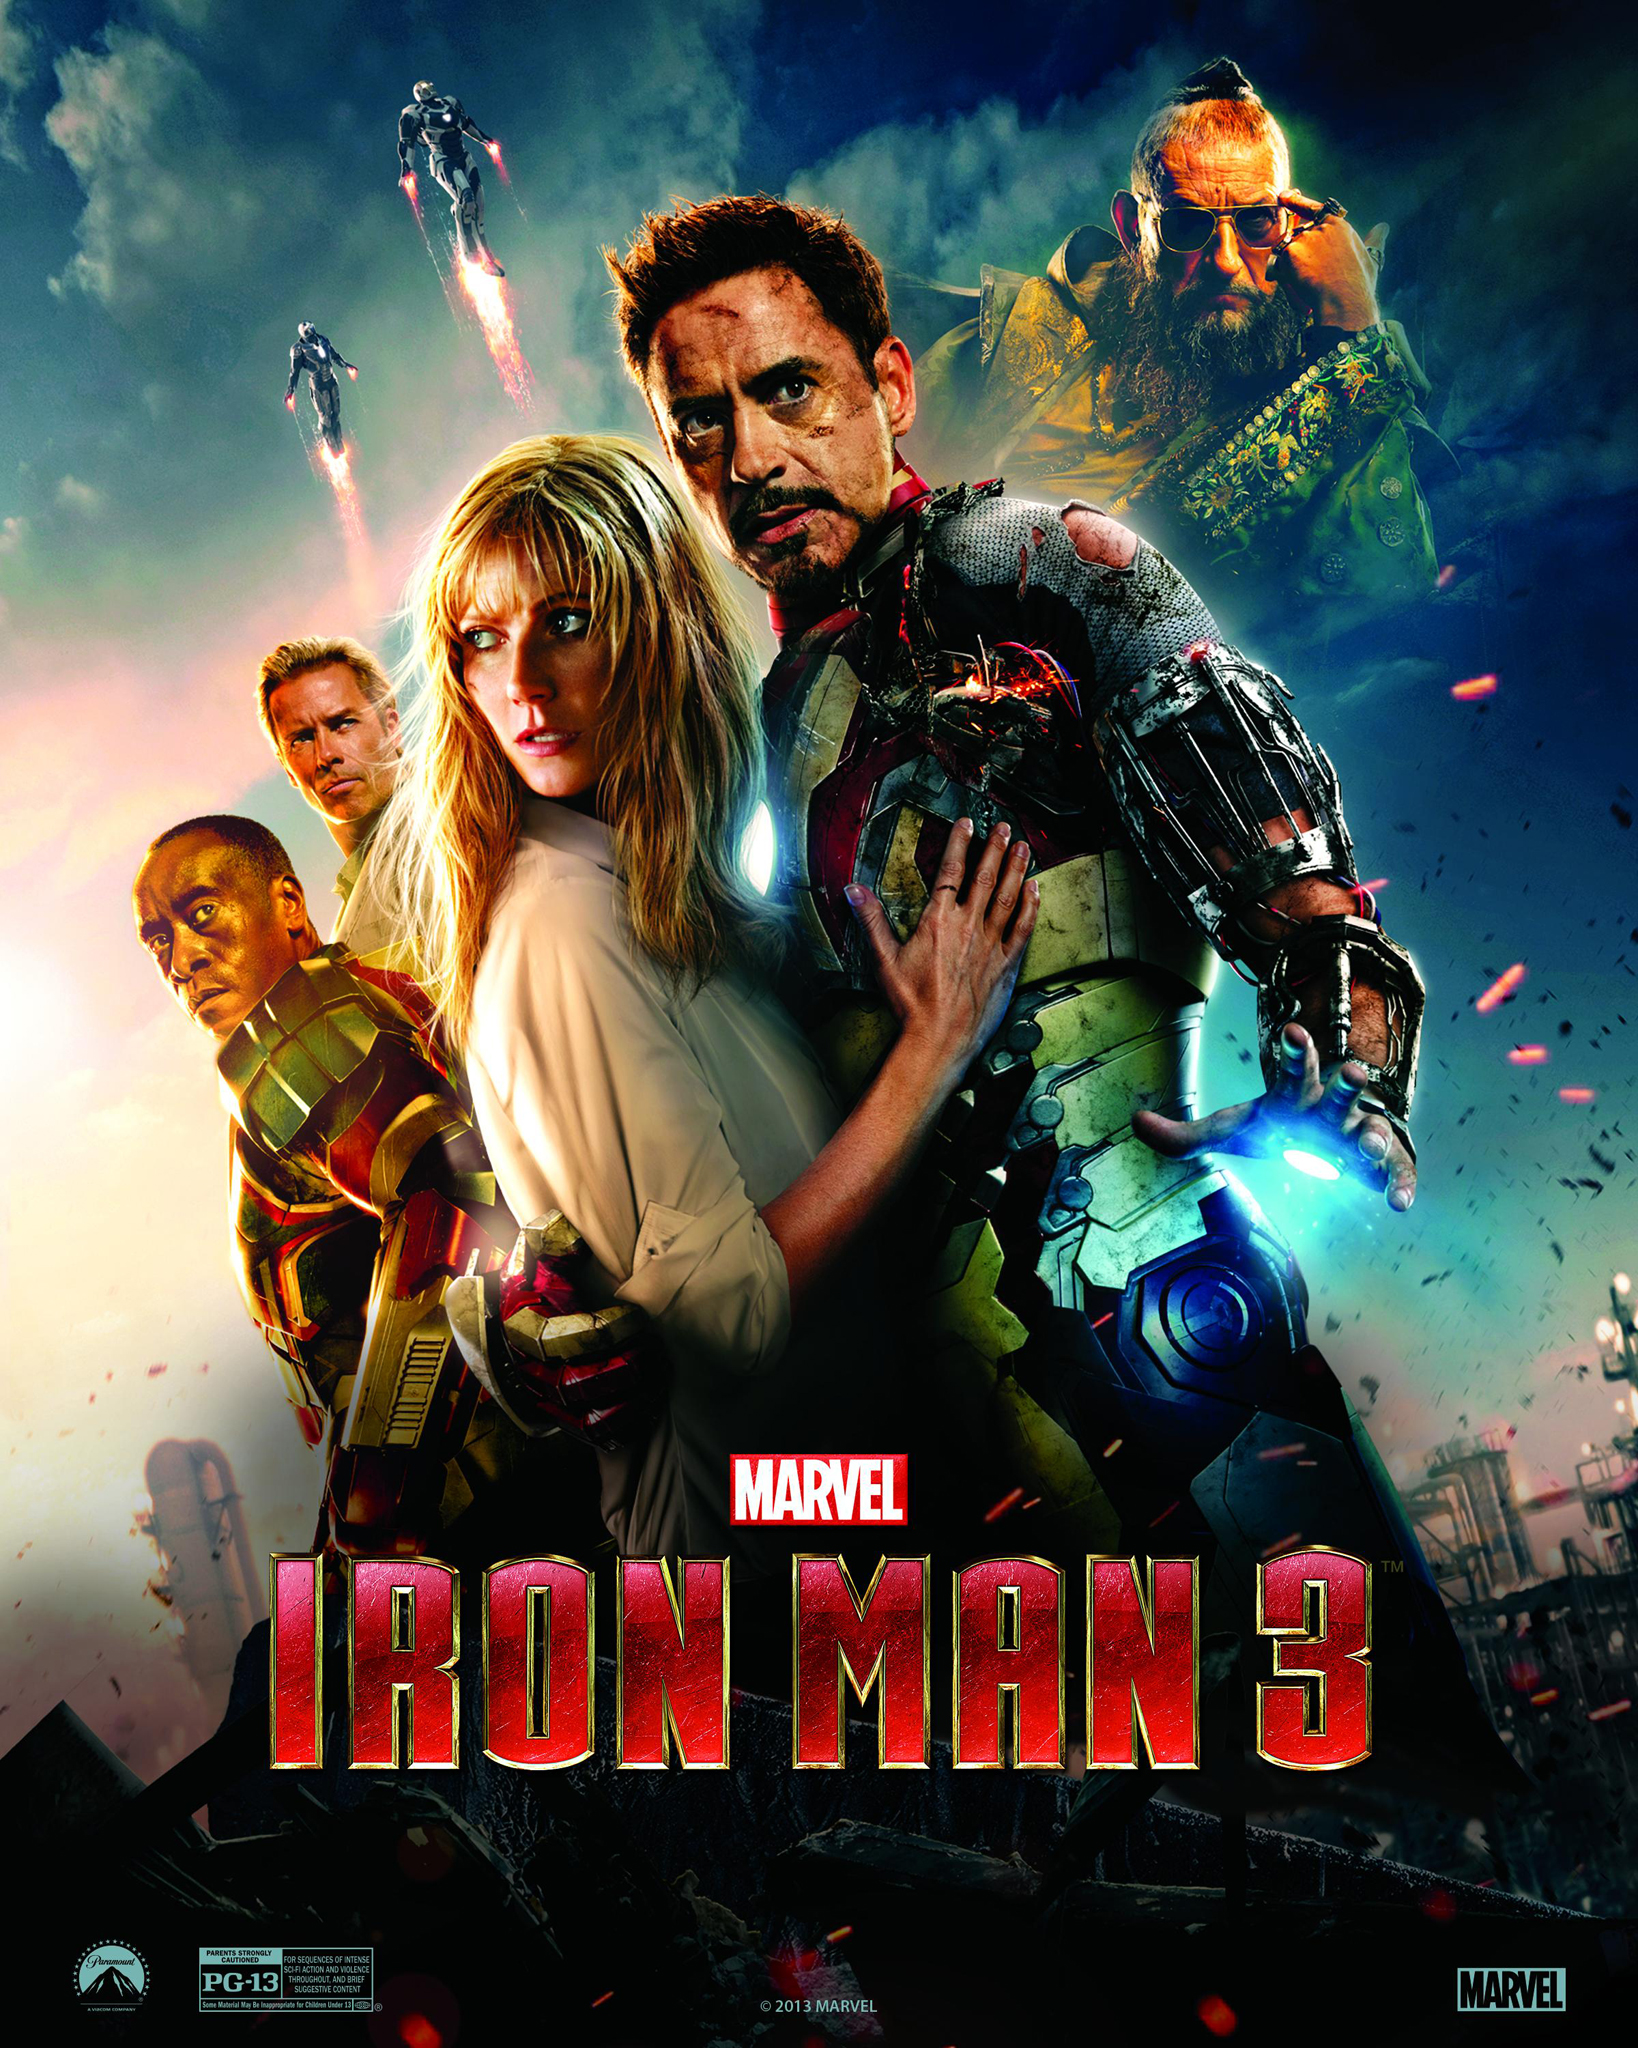 Iron man 3 cast